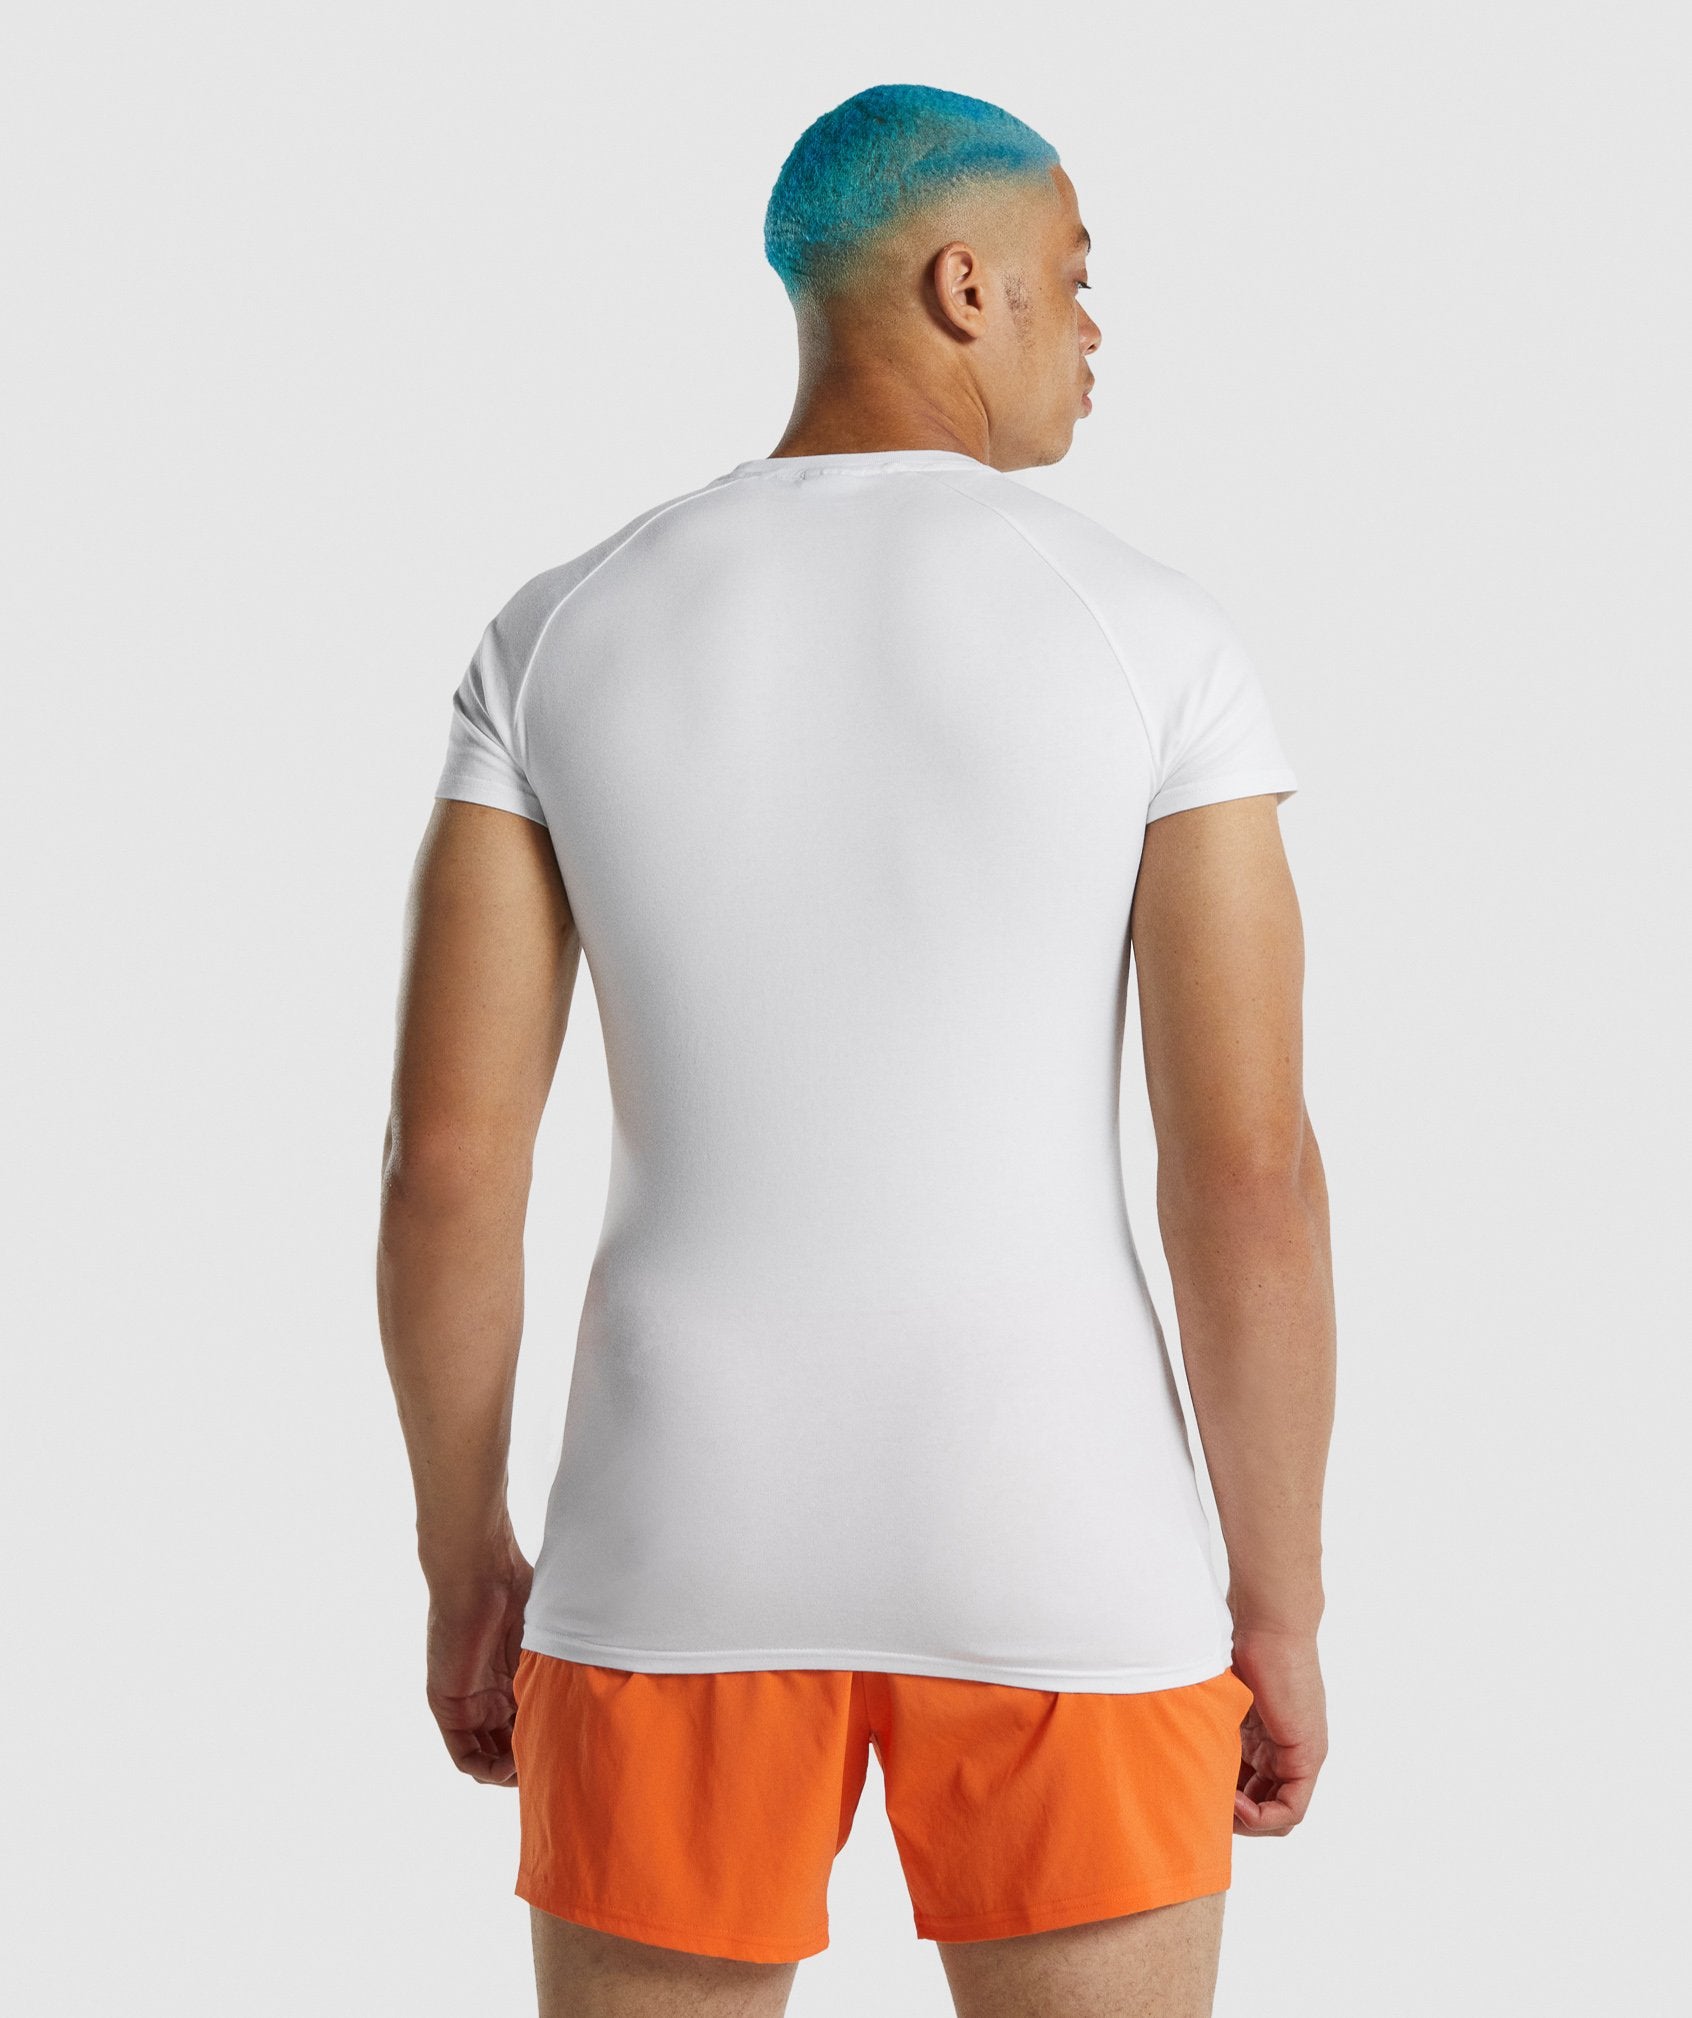 Apollo T-Shirt in White - view 2